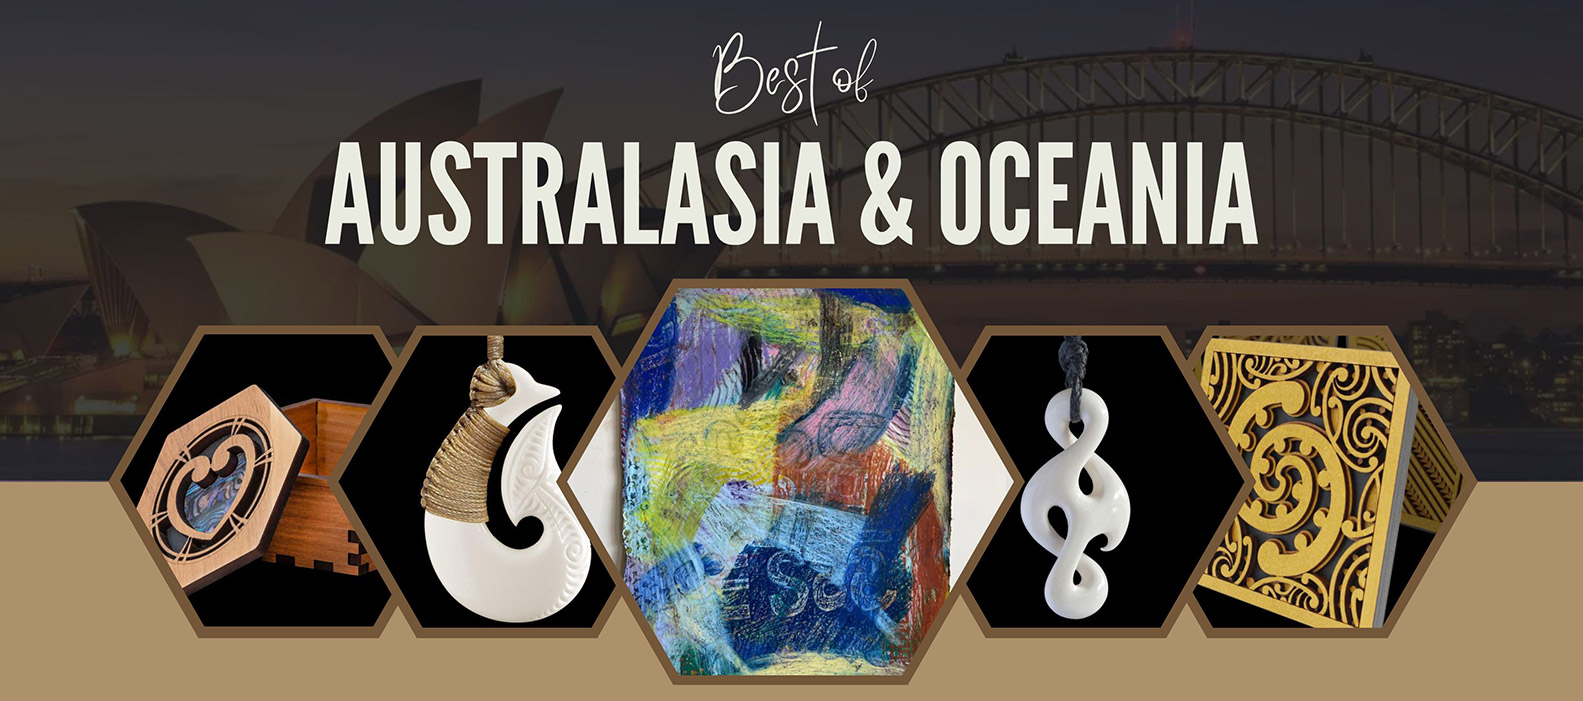 Best of Australasia & Oceania